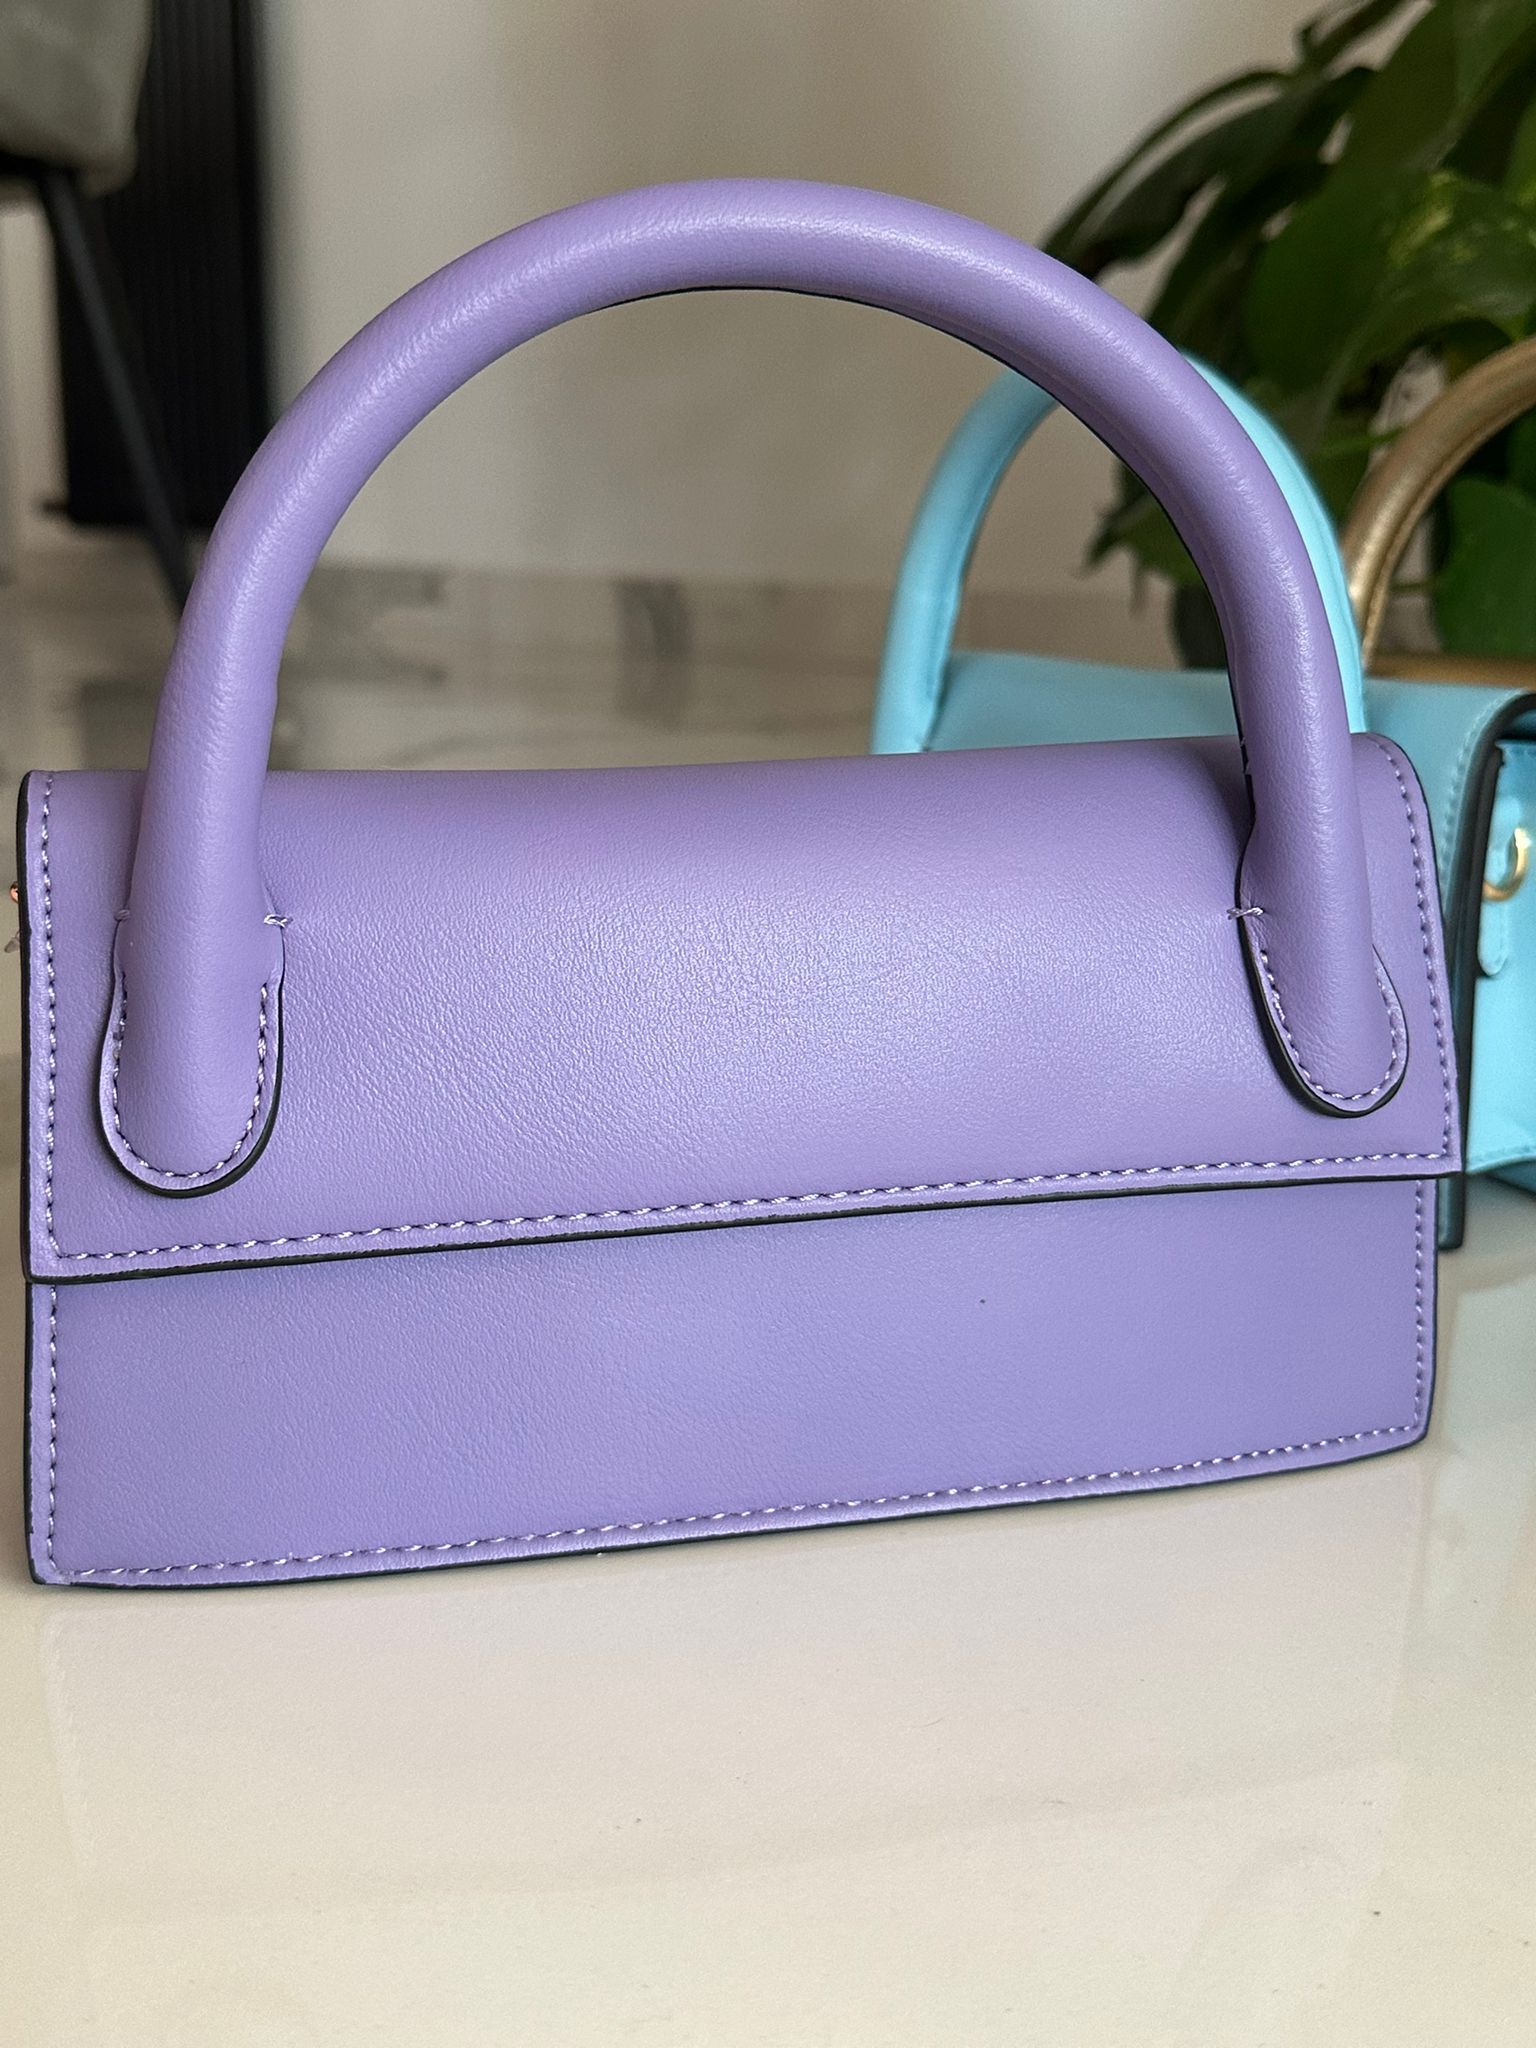 Mini sac Zaira - Violet - FR41